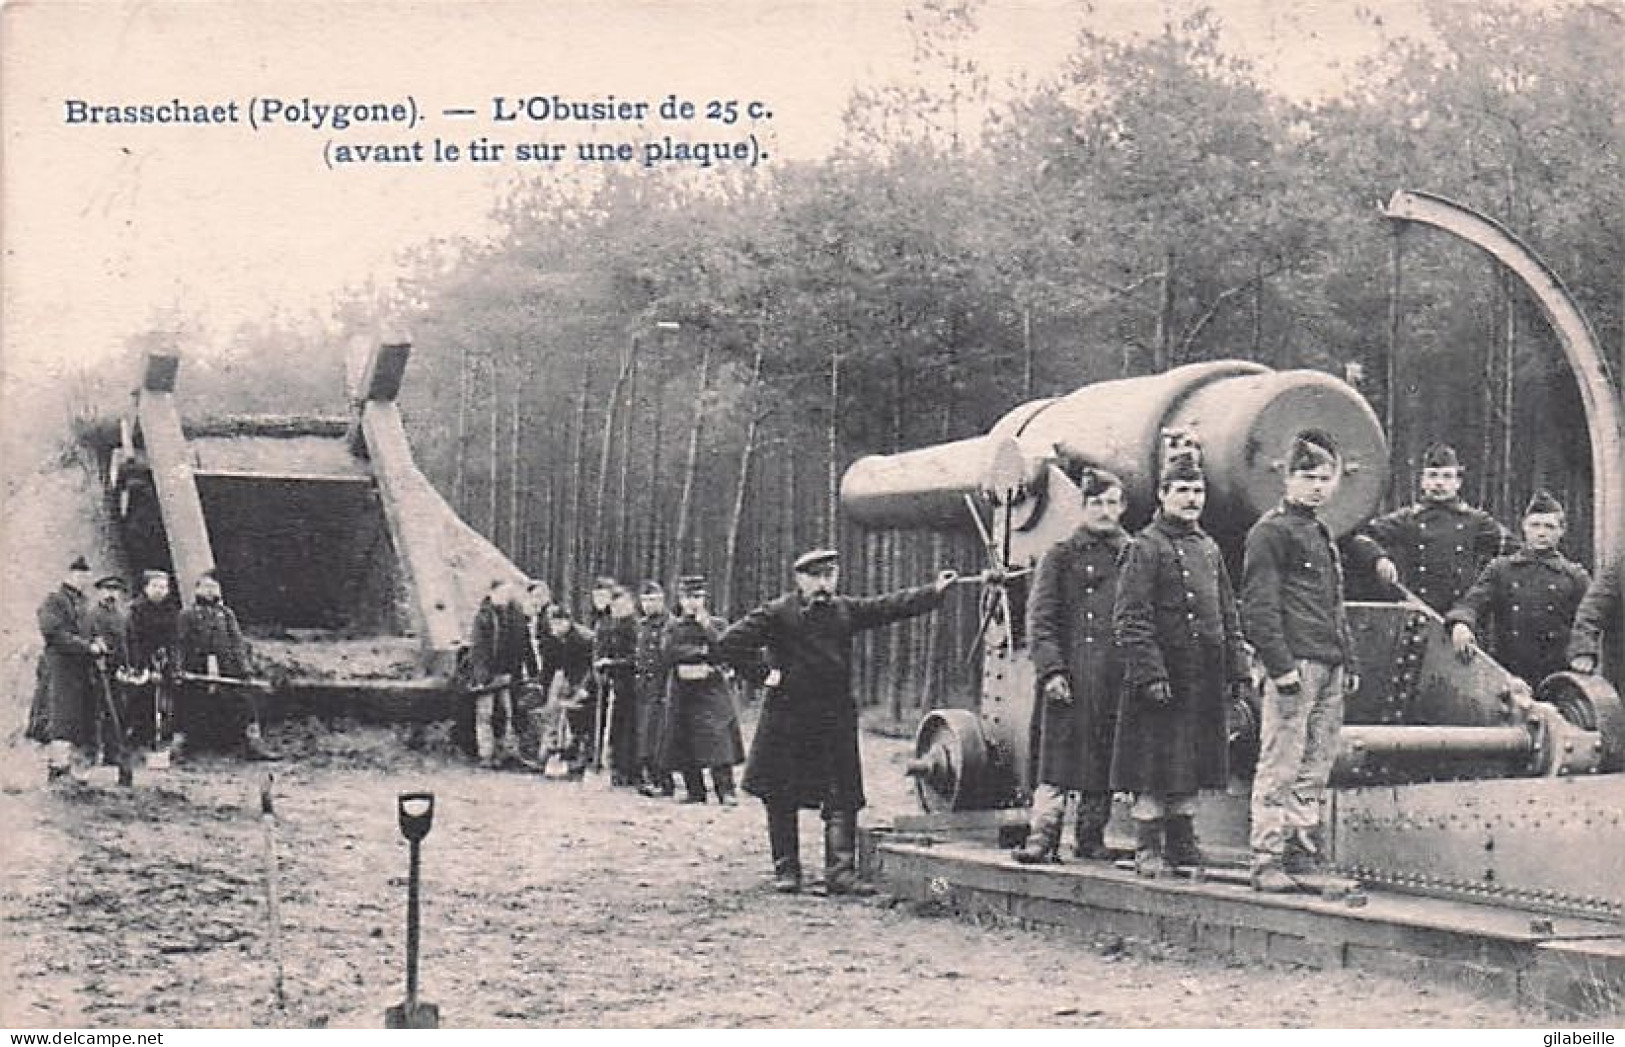 BRASSCHAAT - BRASSCHAET Polygone - L'obusier De 25 C - Avant Le Tir Sur Une Plaque - Militaria - 1905 - Brasschaat